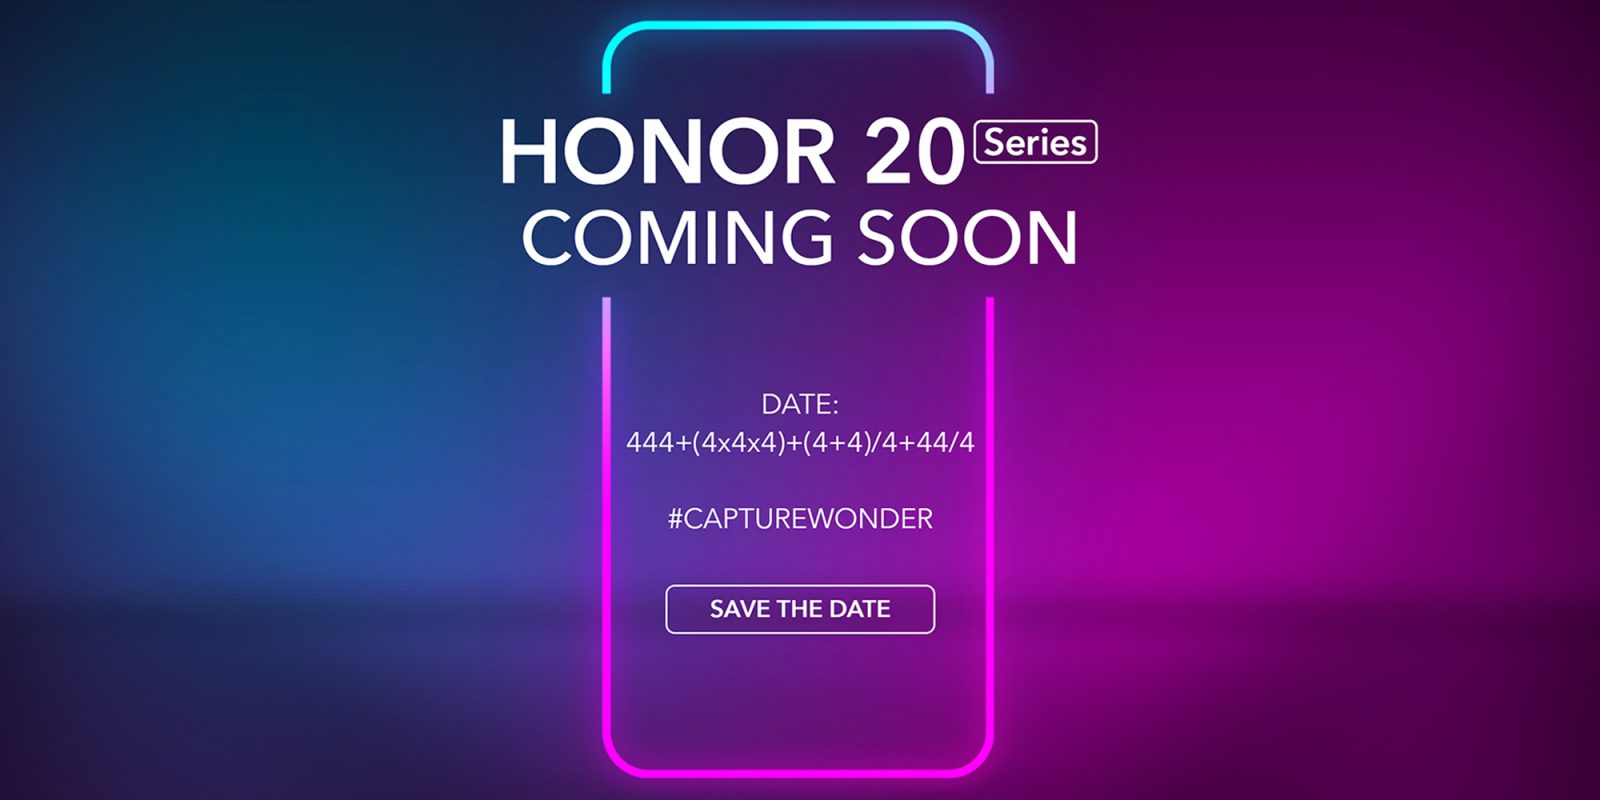 Honor 20 launch event invite